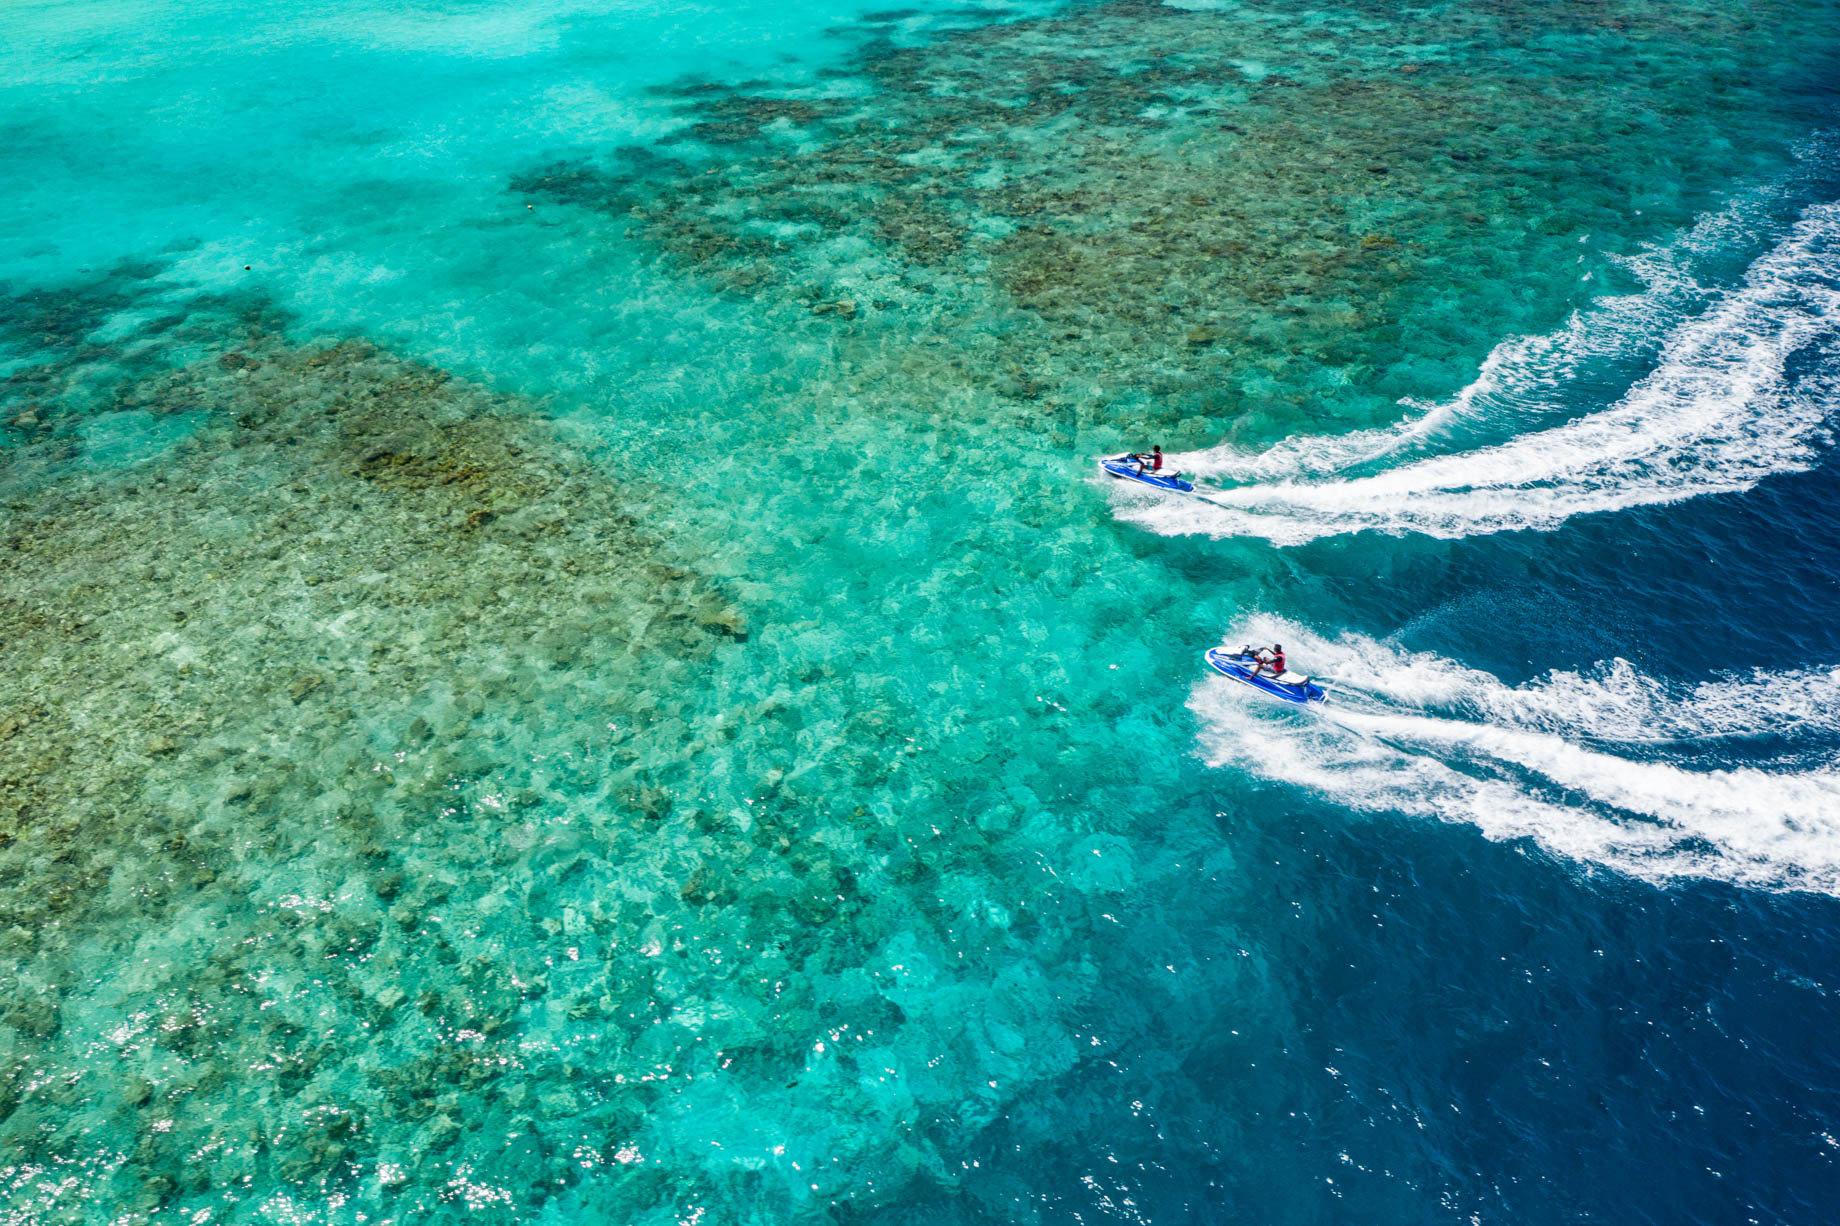 Amilla Fushi Resort and Residences – Baa Atoll, Maldives – Ocean Watersports Jet Skiing